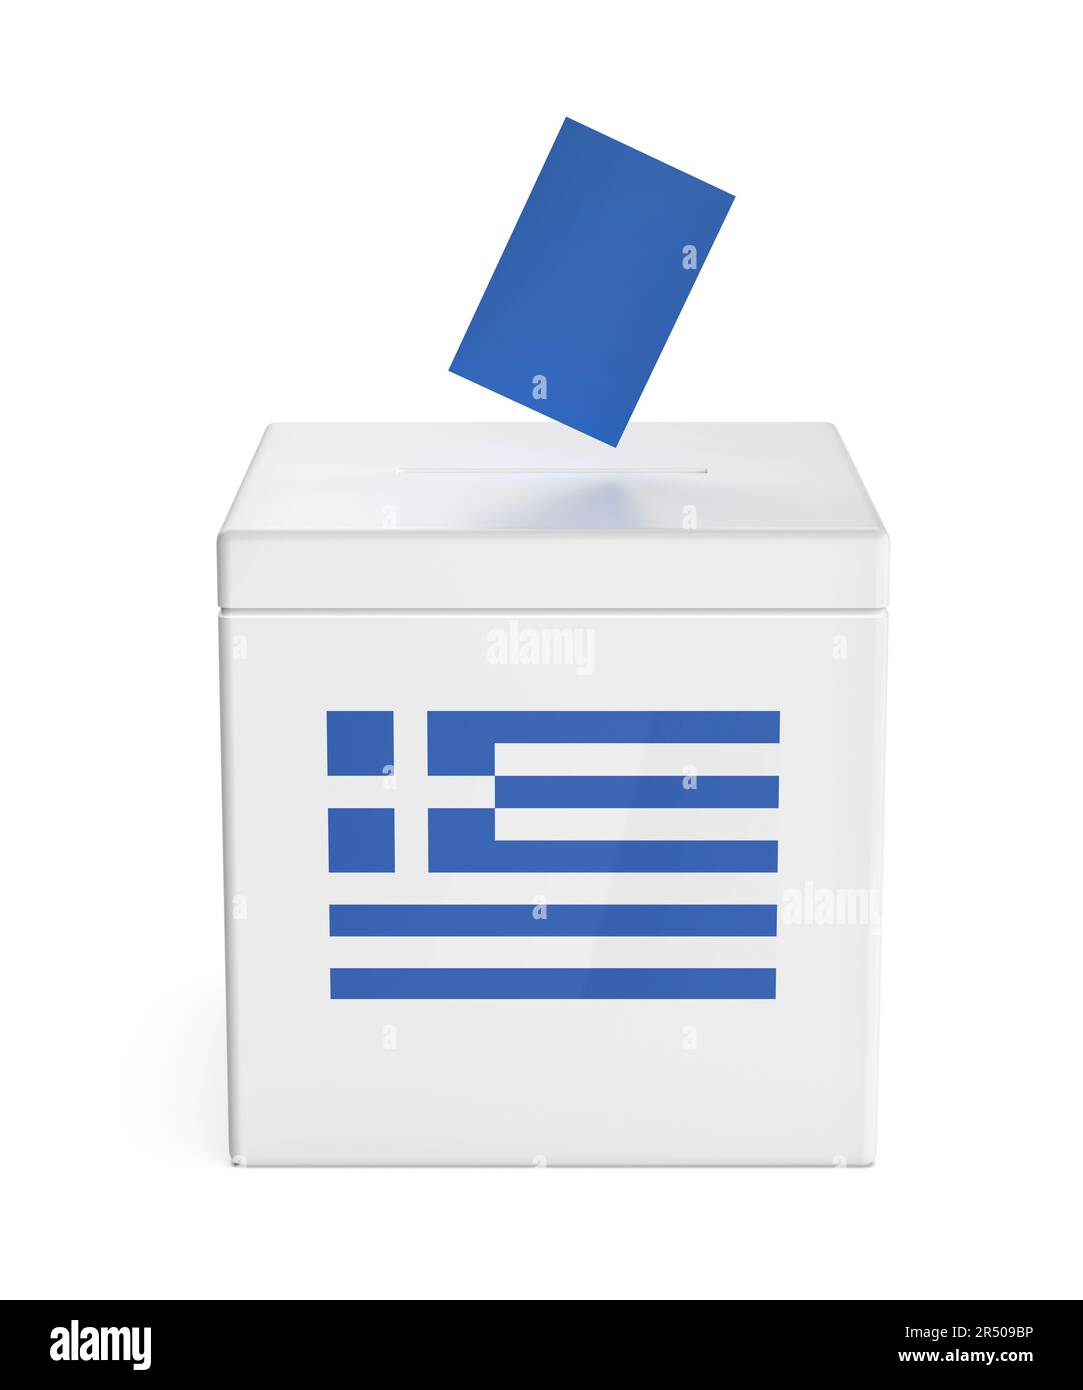 Urne avec drapeau grec, image de concept pour les élections en Grèce Banque D'Images